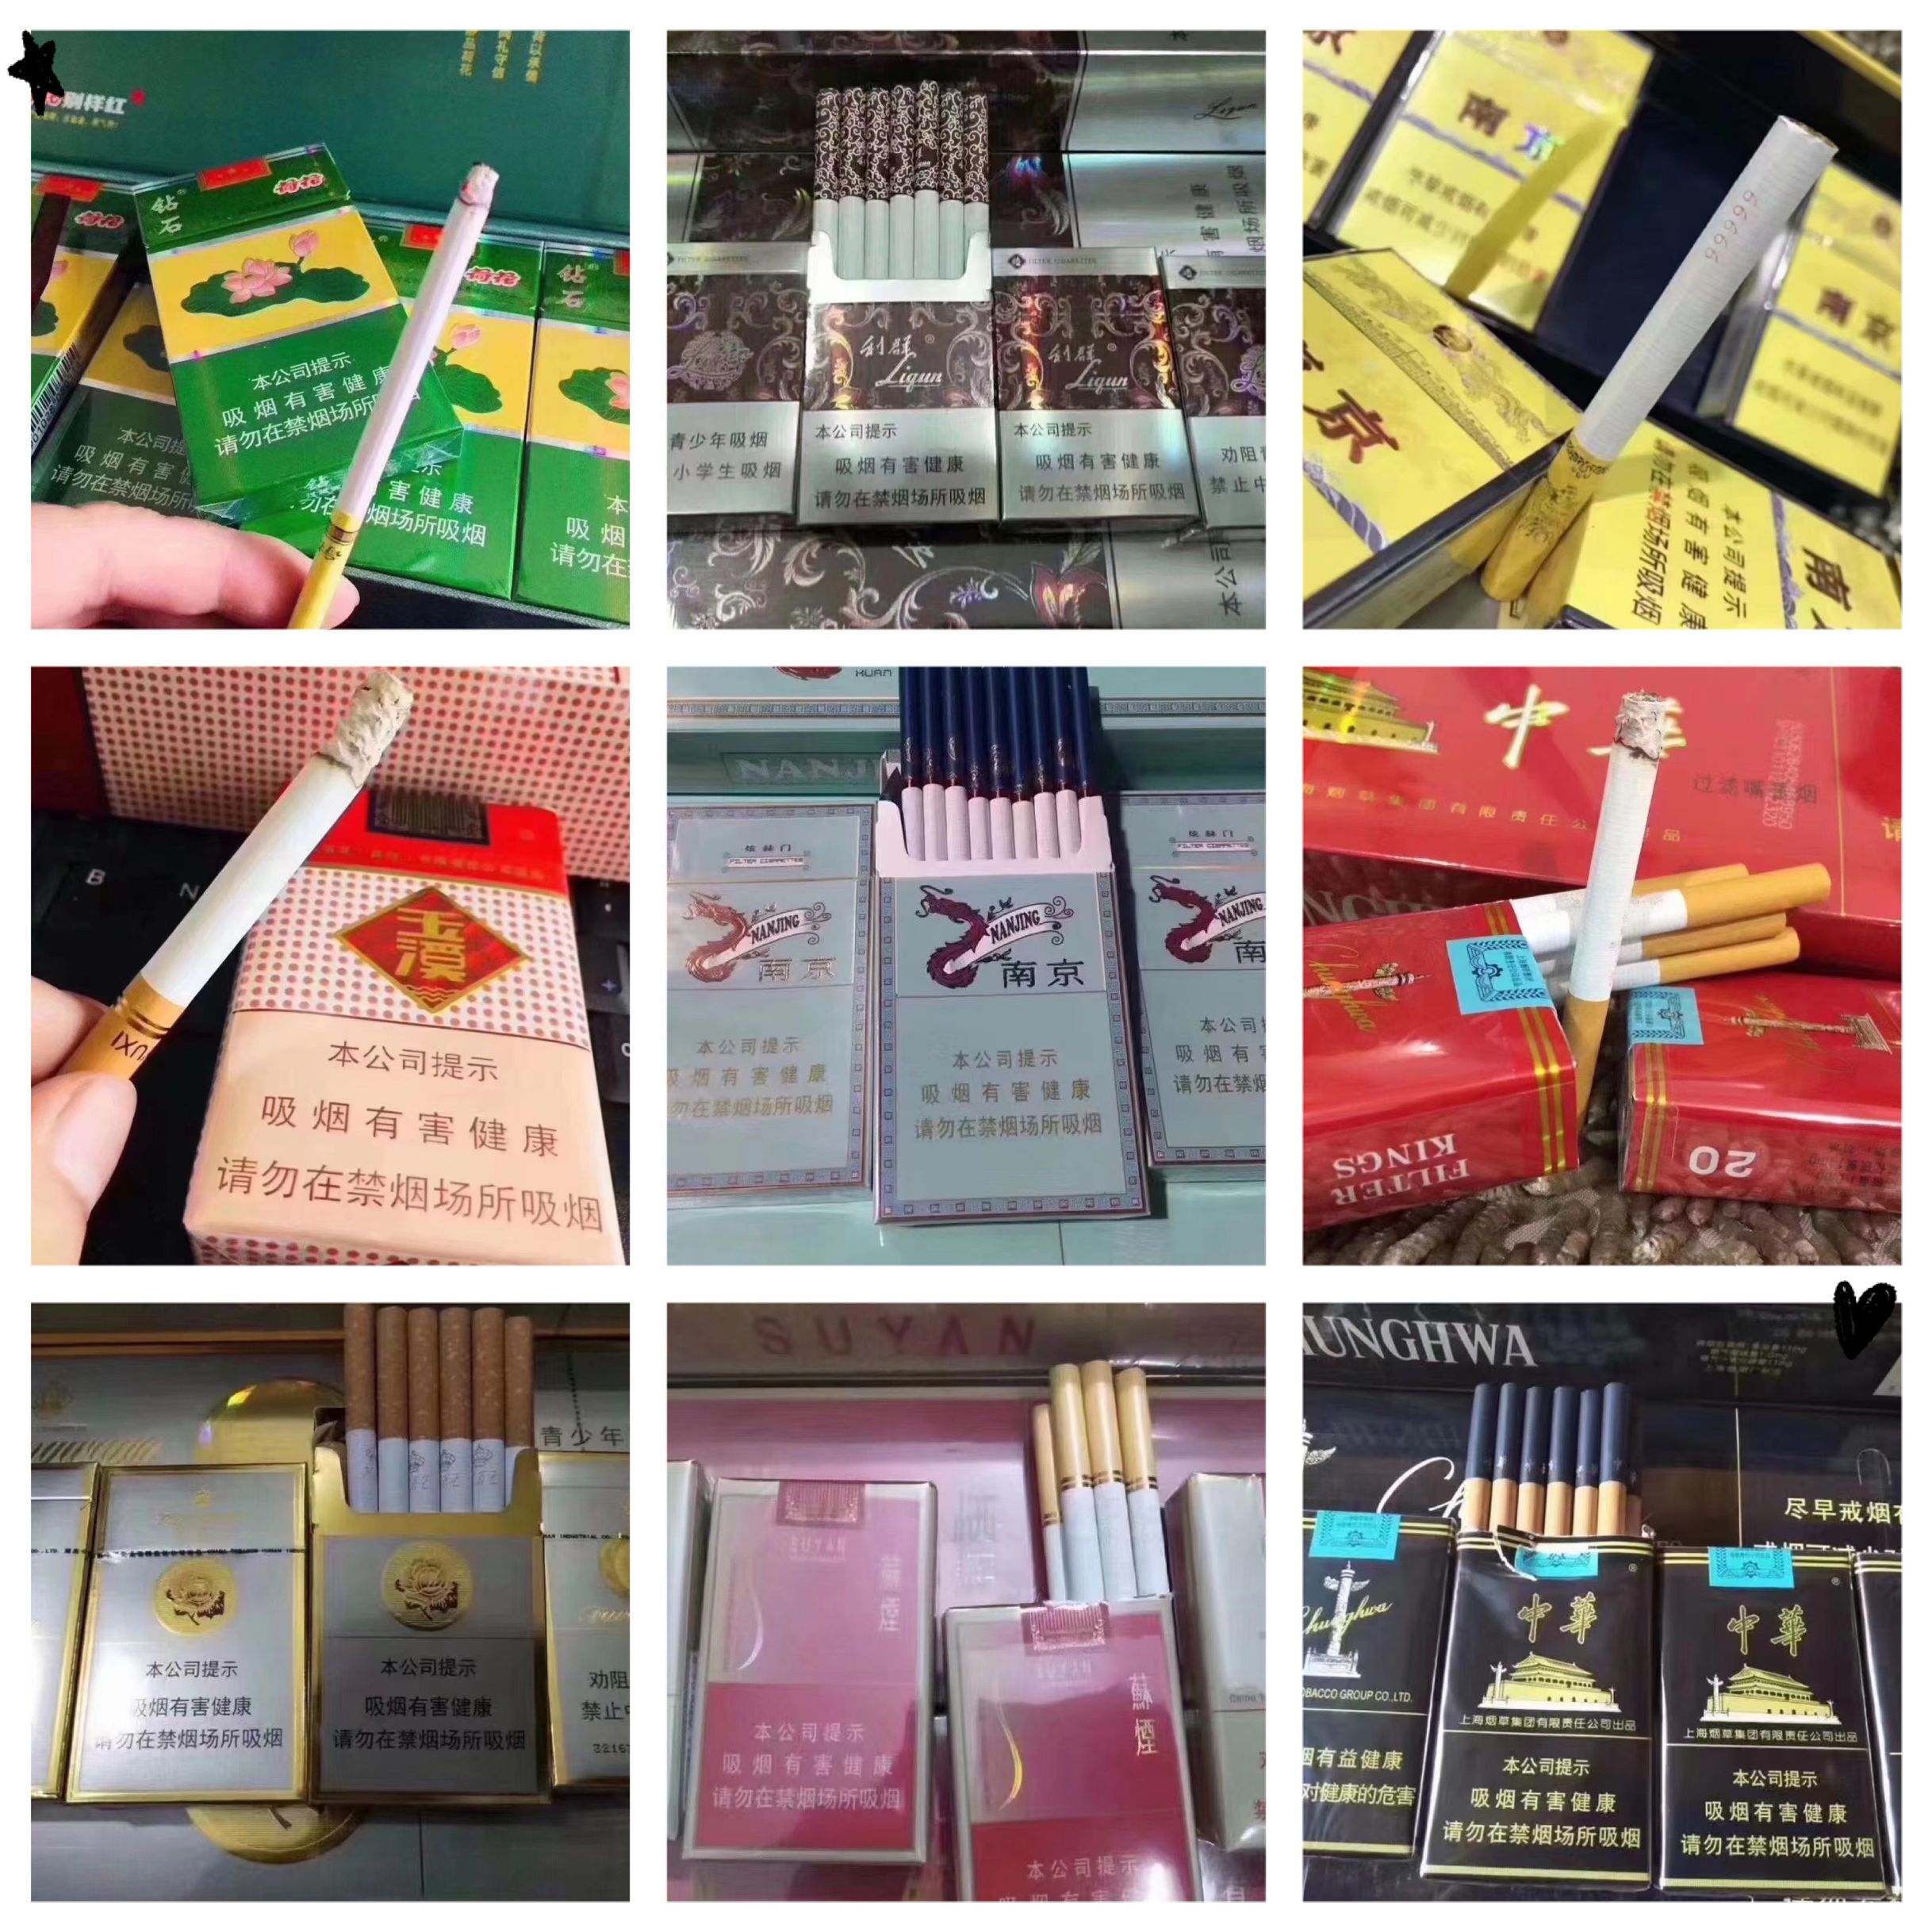 越南代工香烟质量到底如何_越南代工烟_越南香烟代工厂